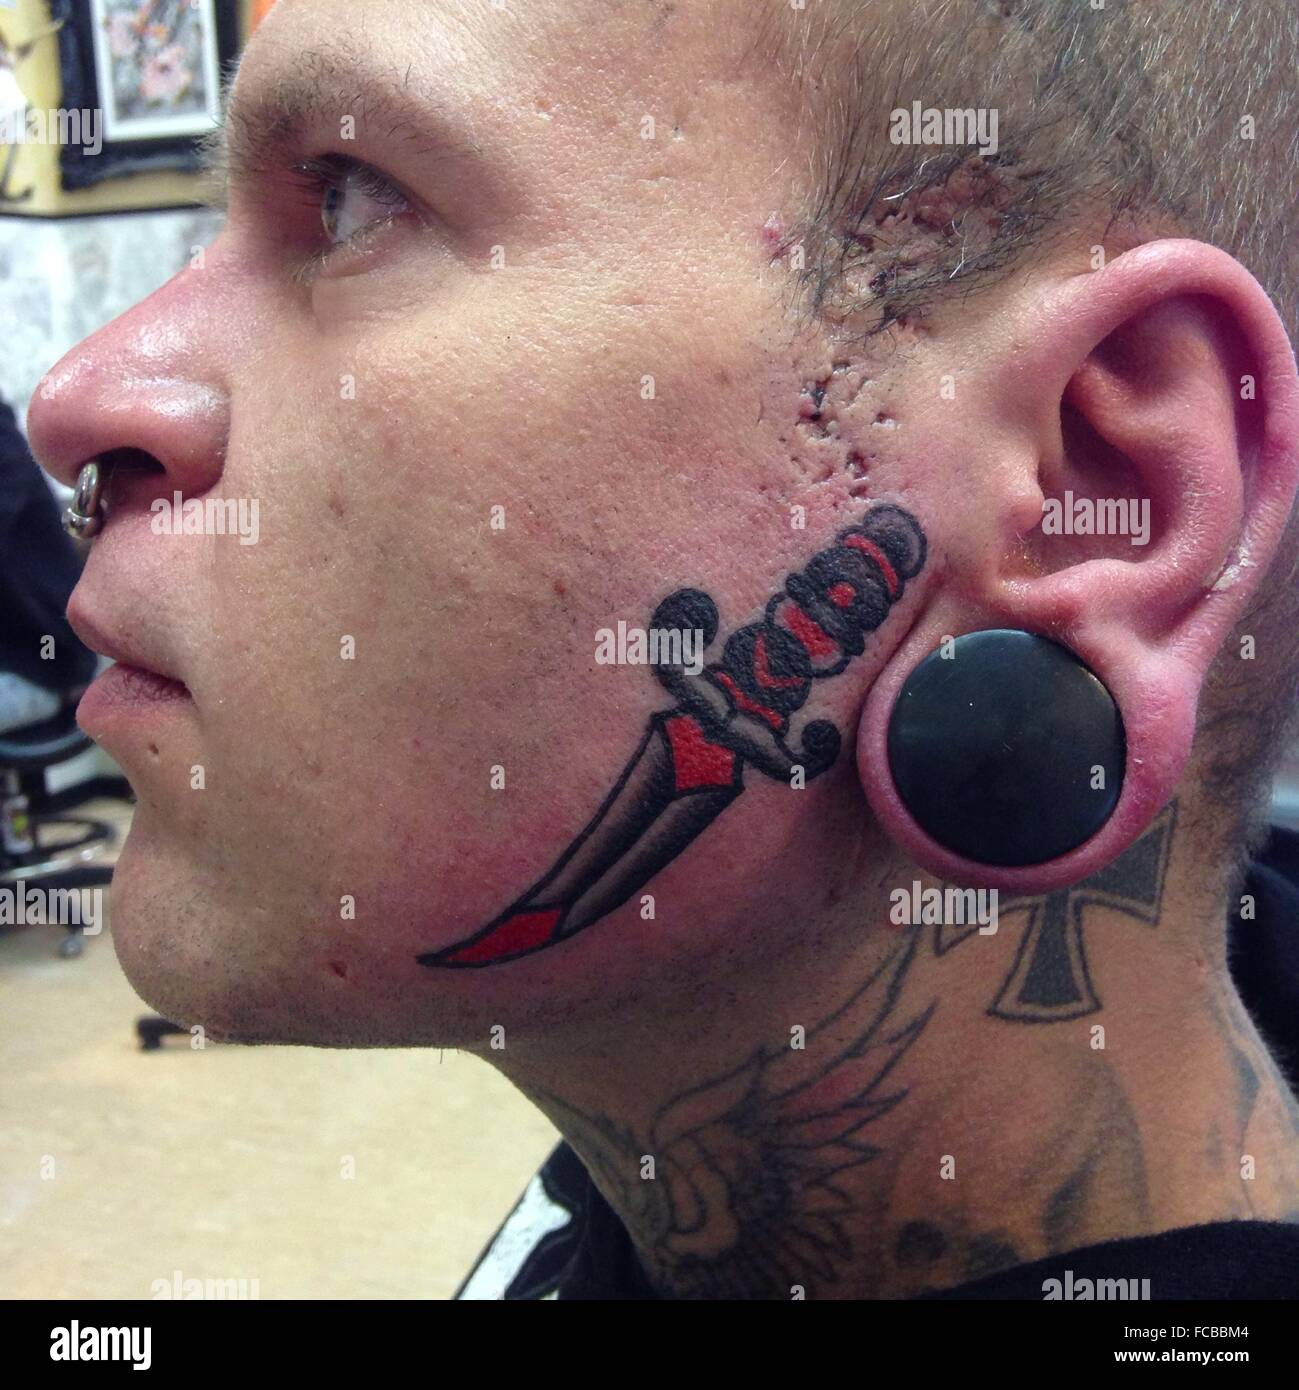 Tattoo On Side Of Face Stockfotos und -bilder Kaufen - Alamy